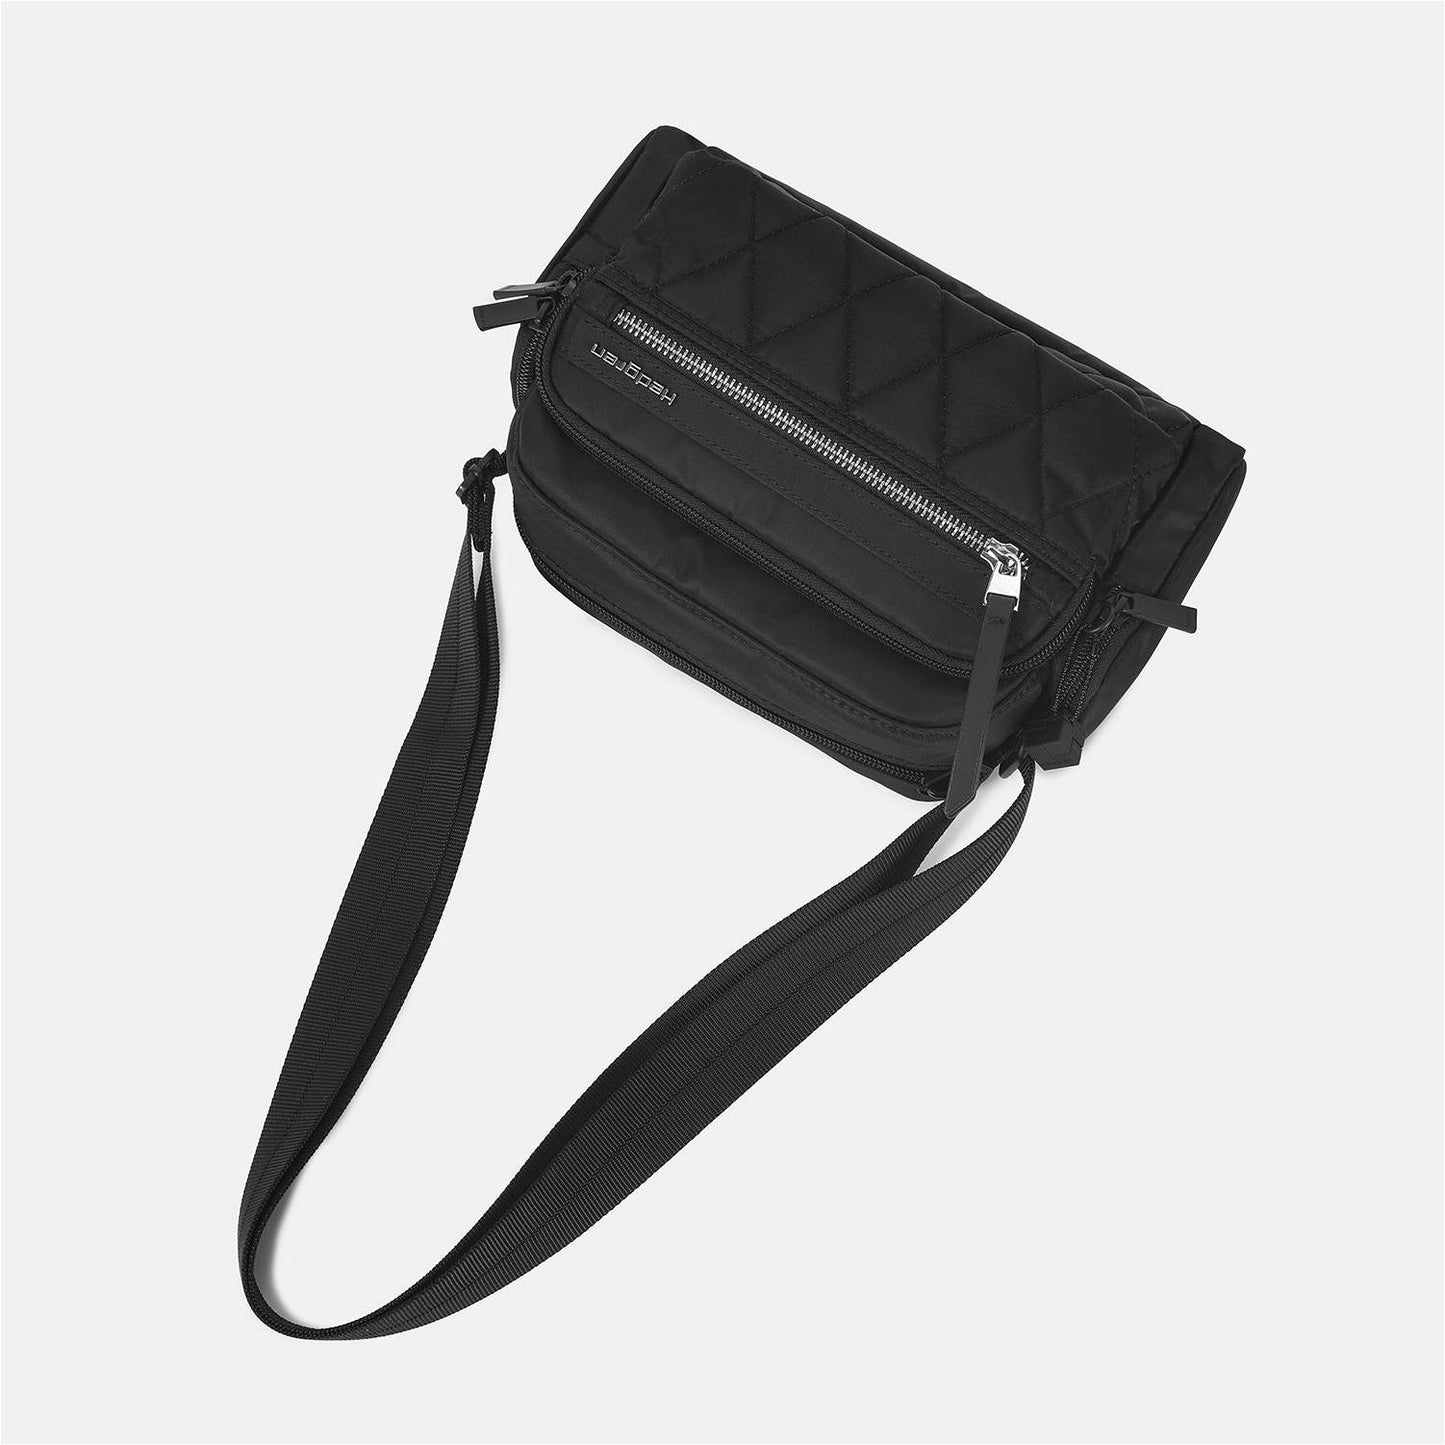 Hedgren-EMILY shoulder bag